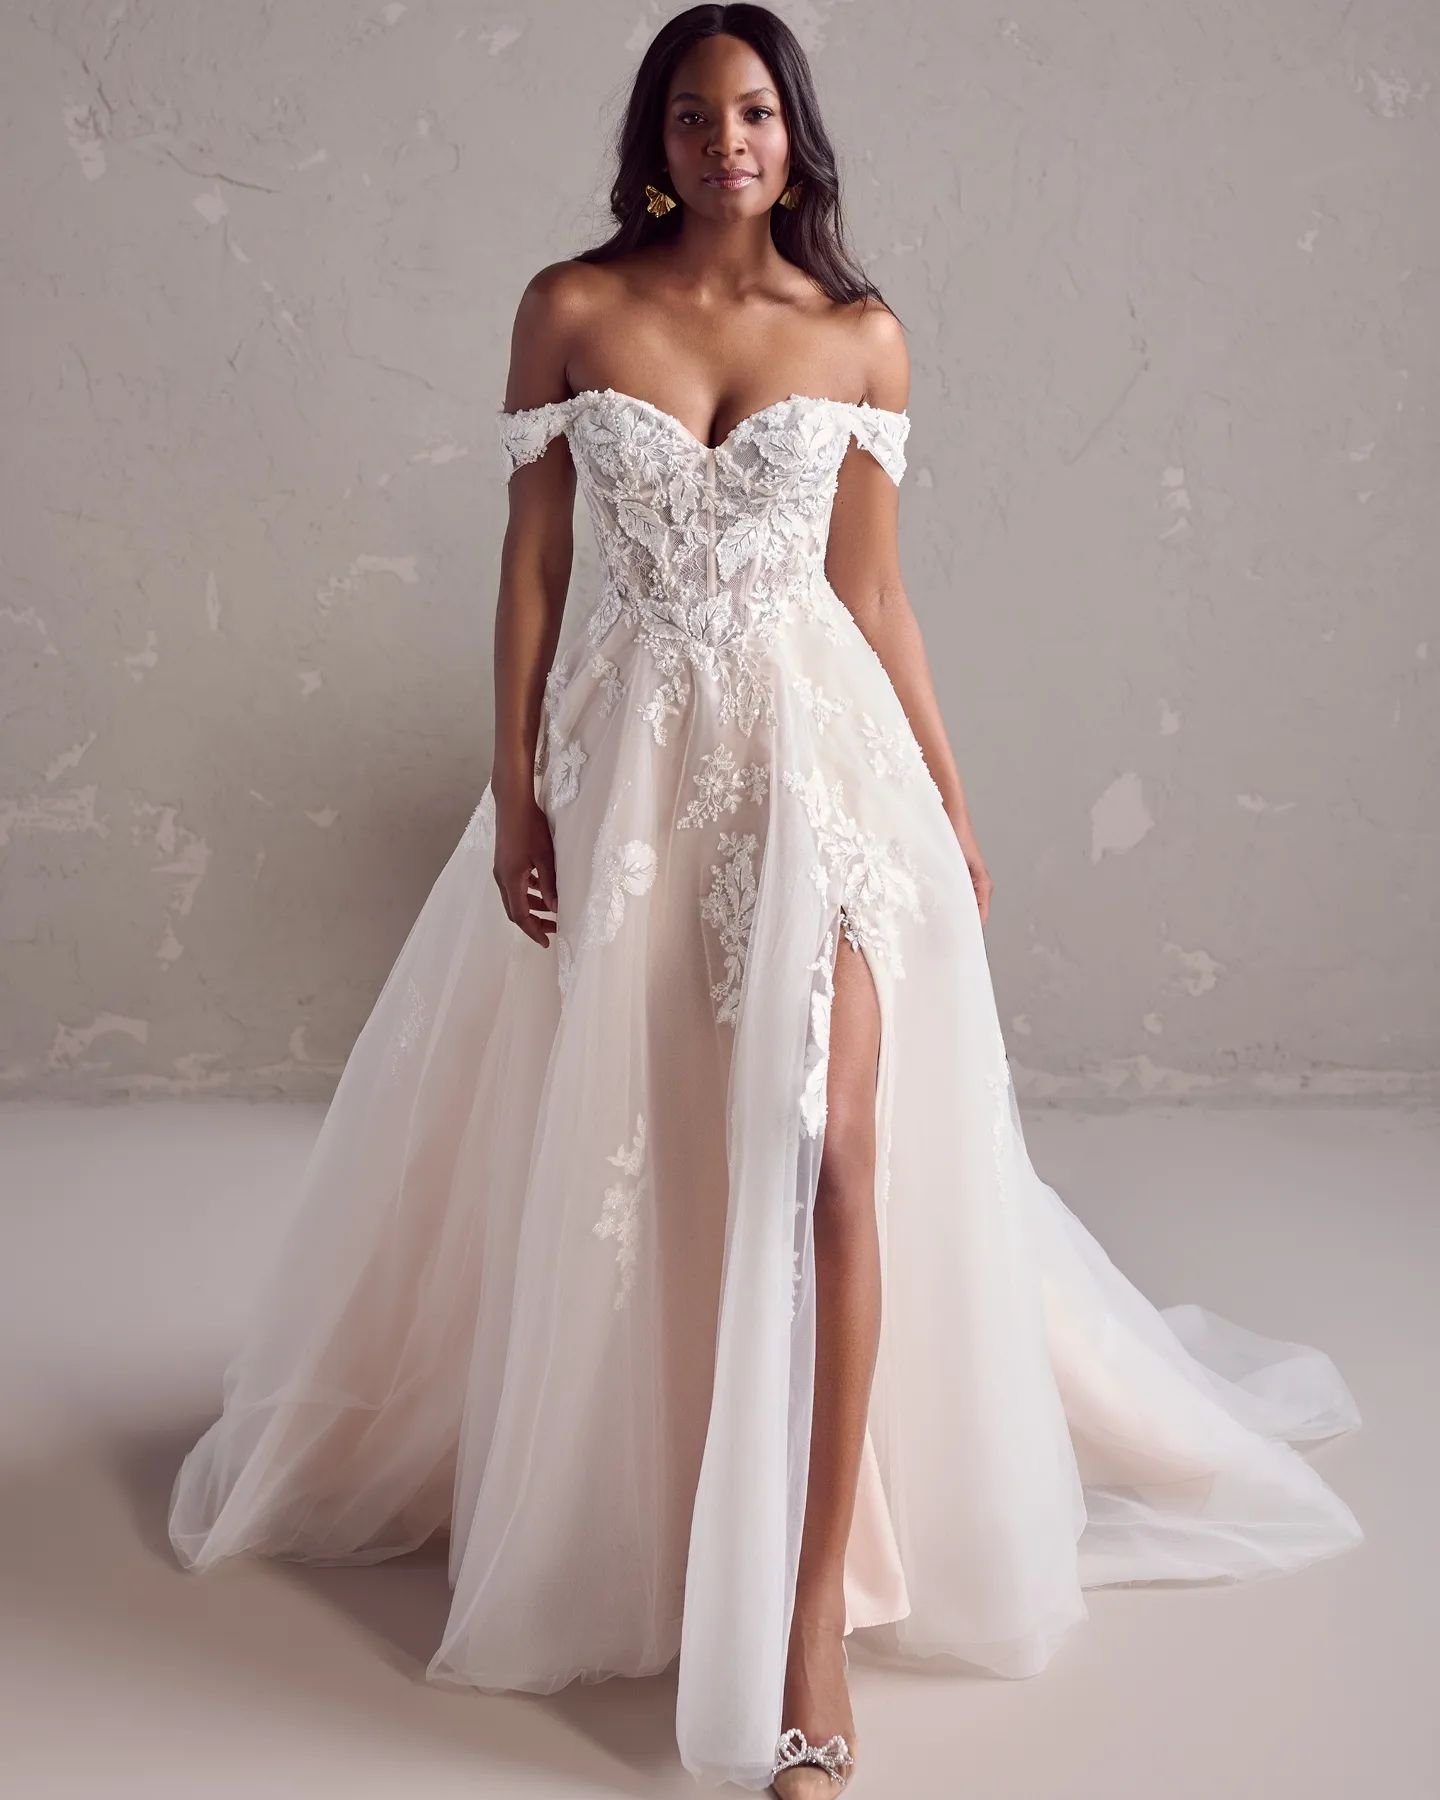 Nieuw van Rebecca Ingram 🤩

Wil jij deze jurk passen? Maak dan nu een afspraak via de website www.novabruidsmode.be/contact 

#bruidsmode #trouwjurk #trouwkleed #bruidsjurk #verloofd #bridetobe #trouwjurkpassen #trouwjurkinspiratie #rebeccaingram